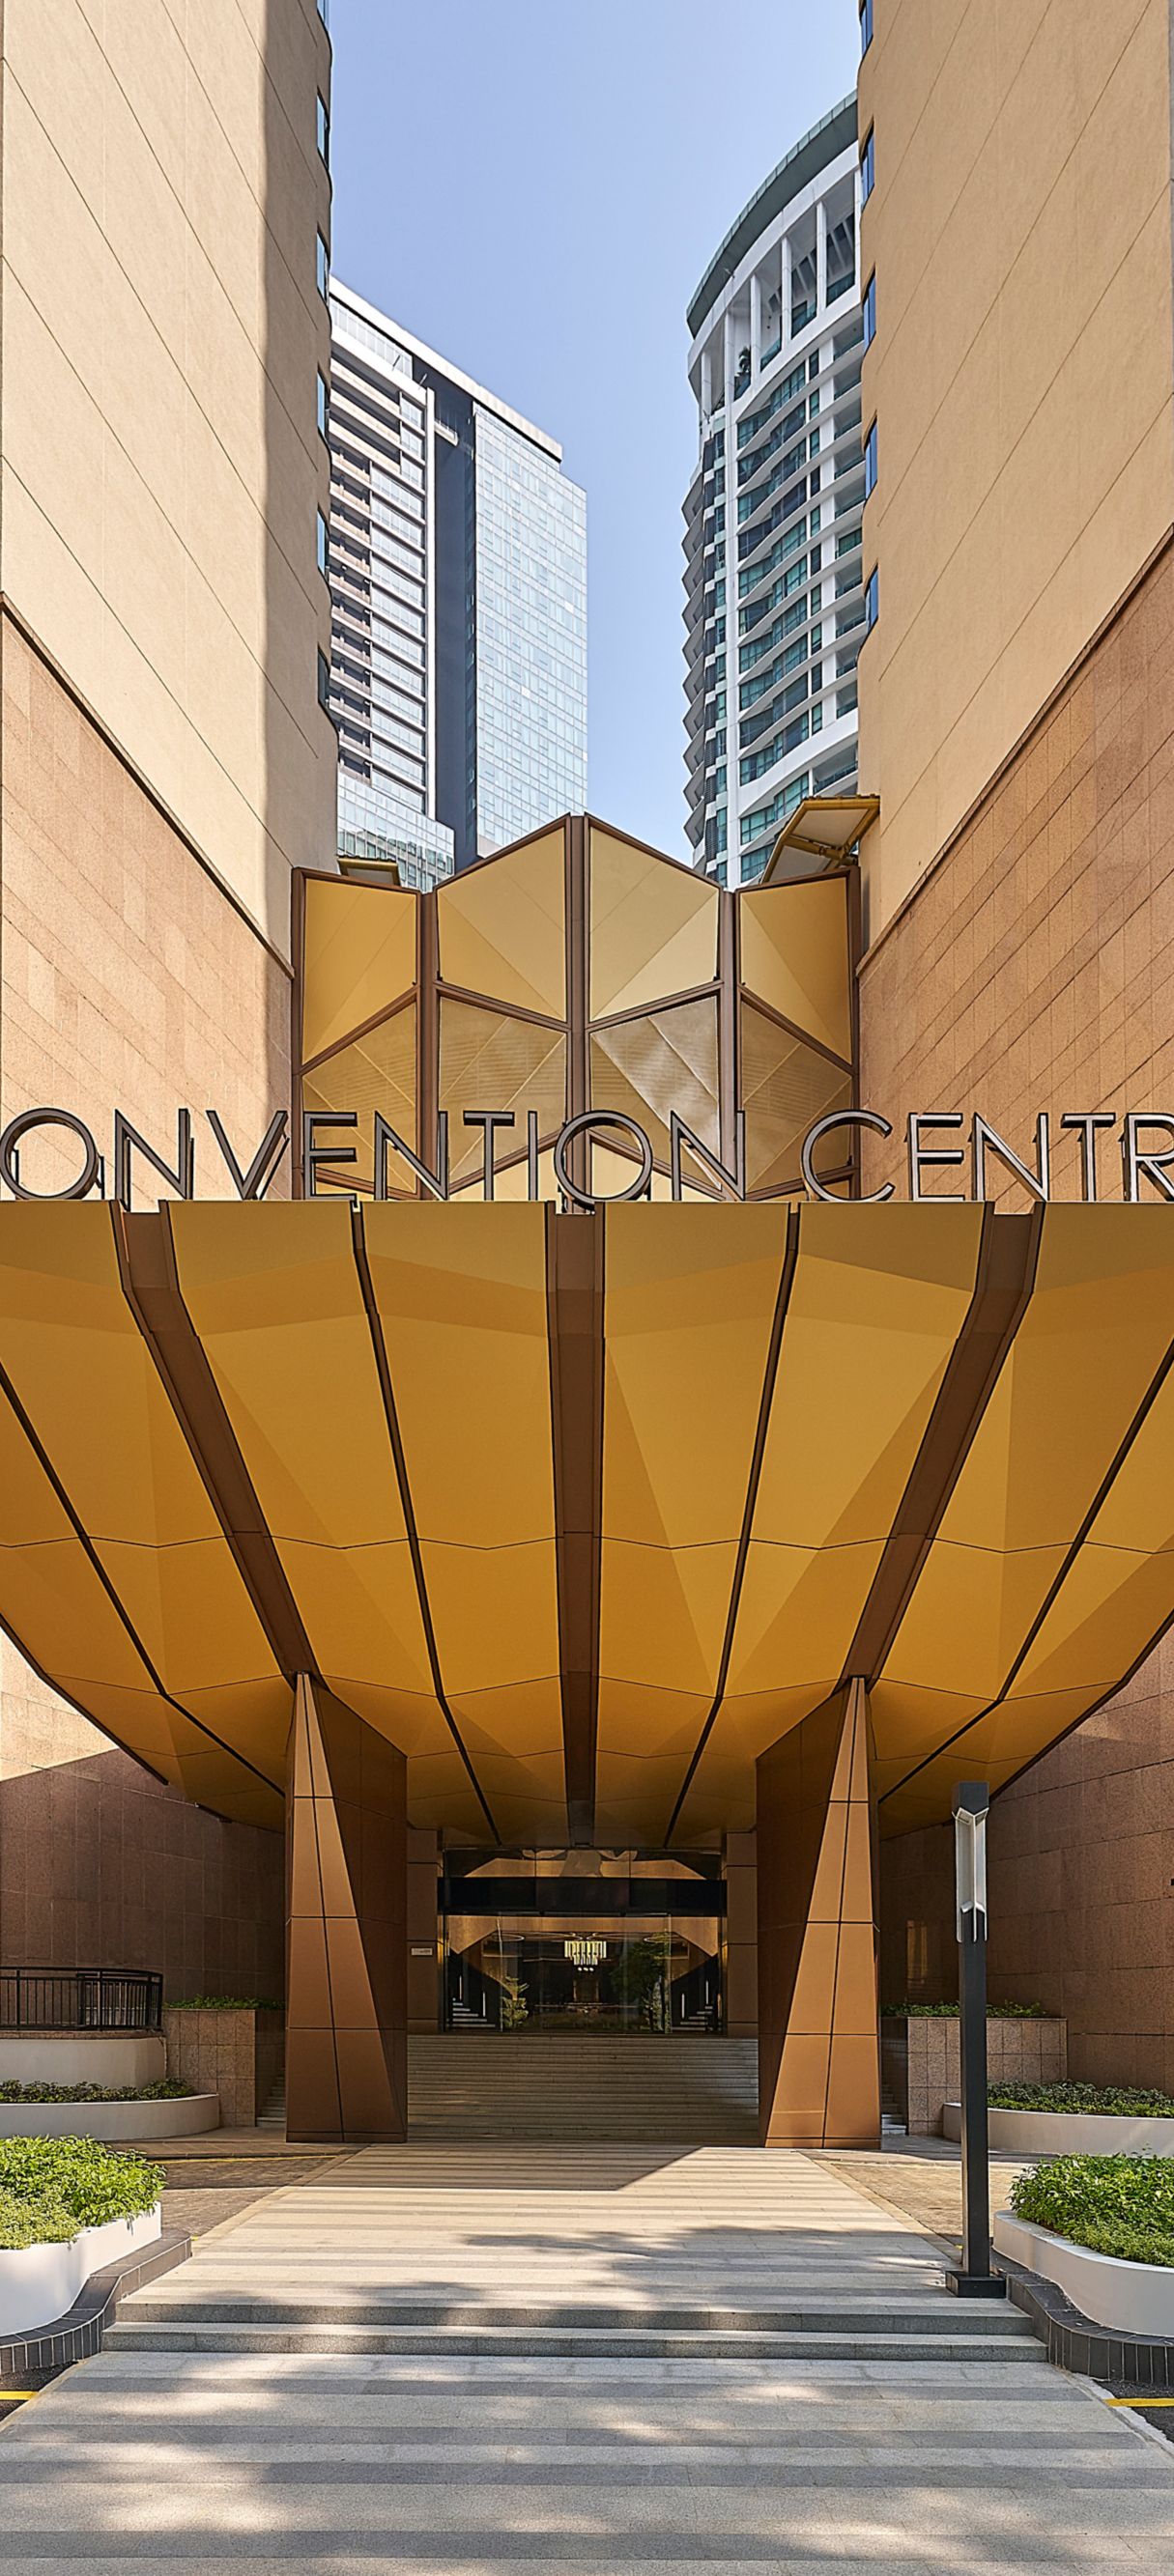 Convention centre exterior